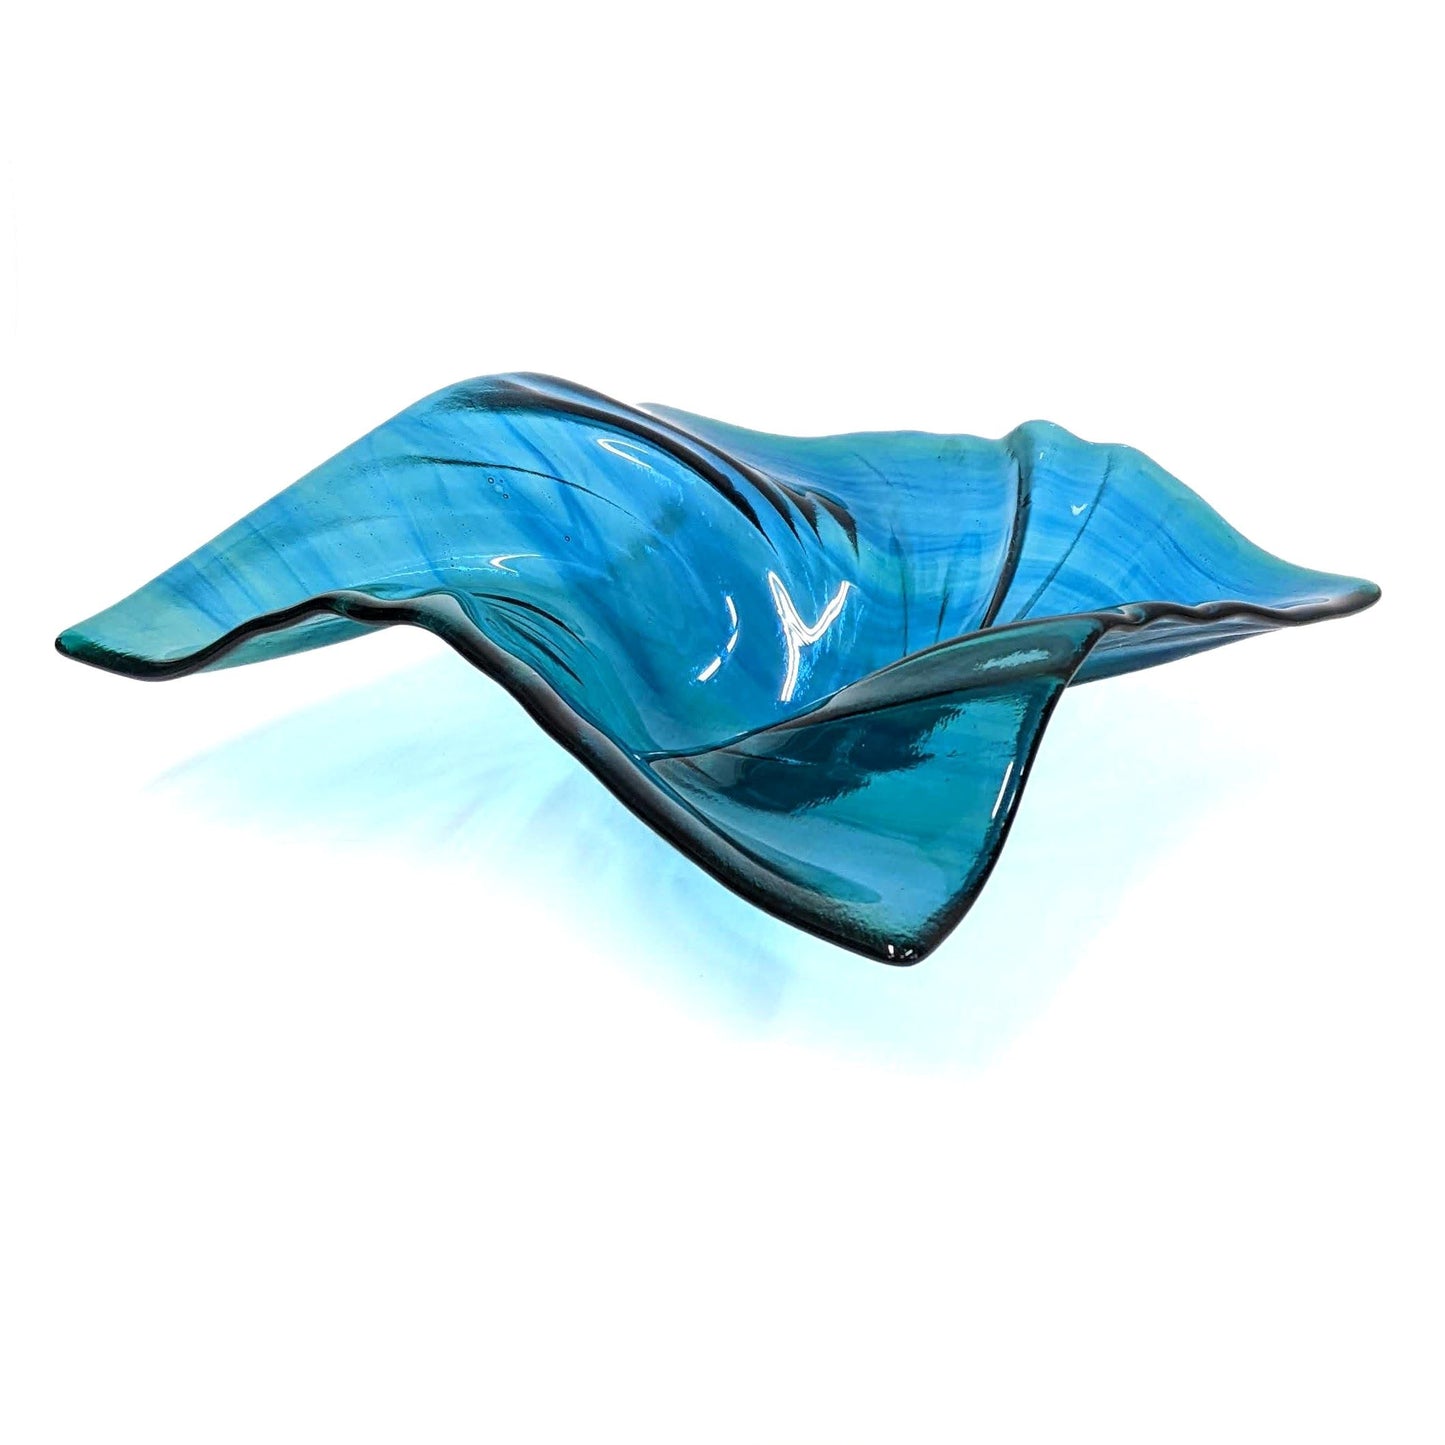 Aqua Teal Turquoise Glass Art Wave Bowl